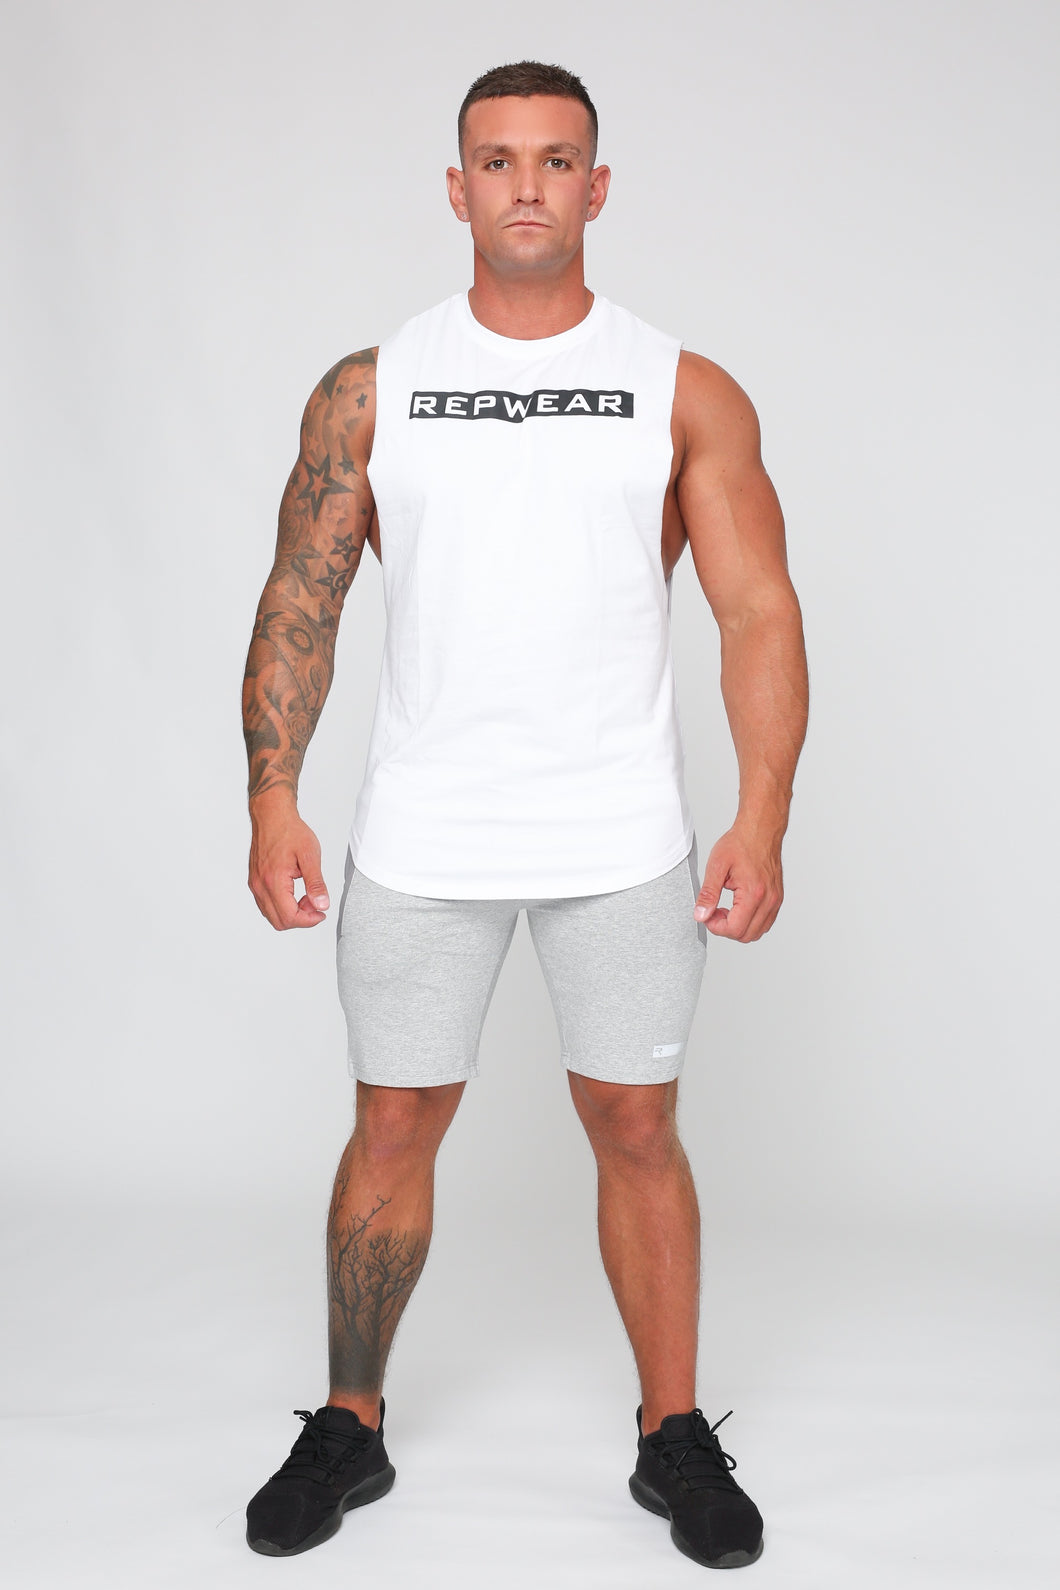 Repwear Fitness Signature Sleeveless T-Shirt White